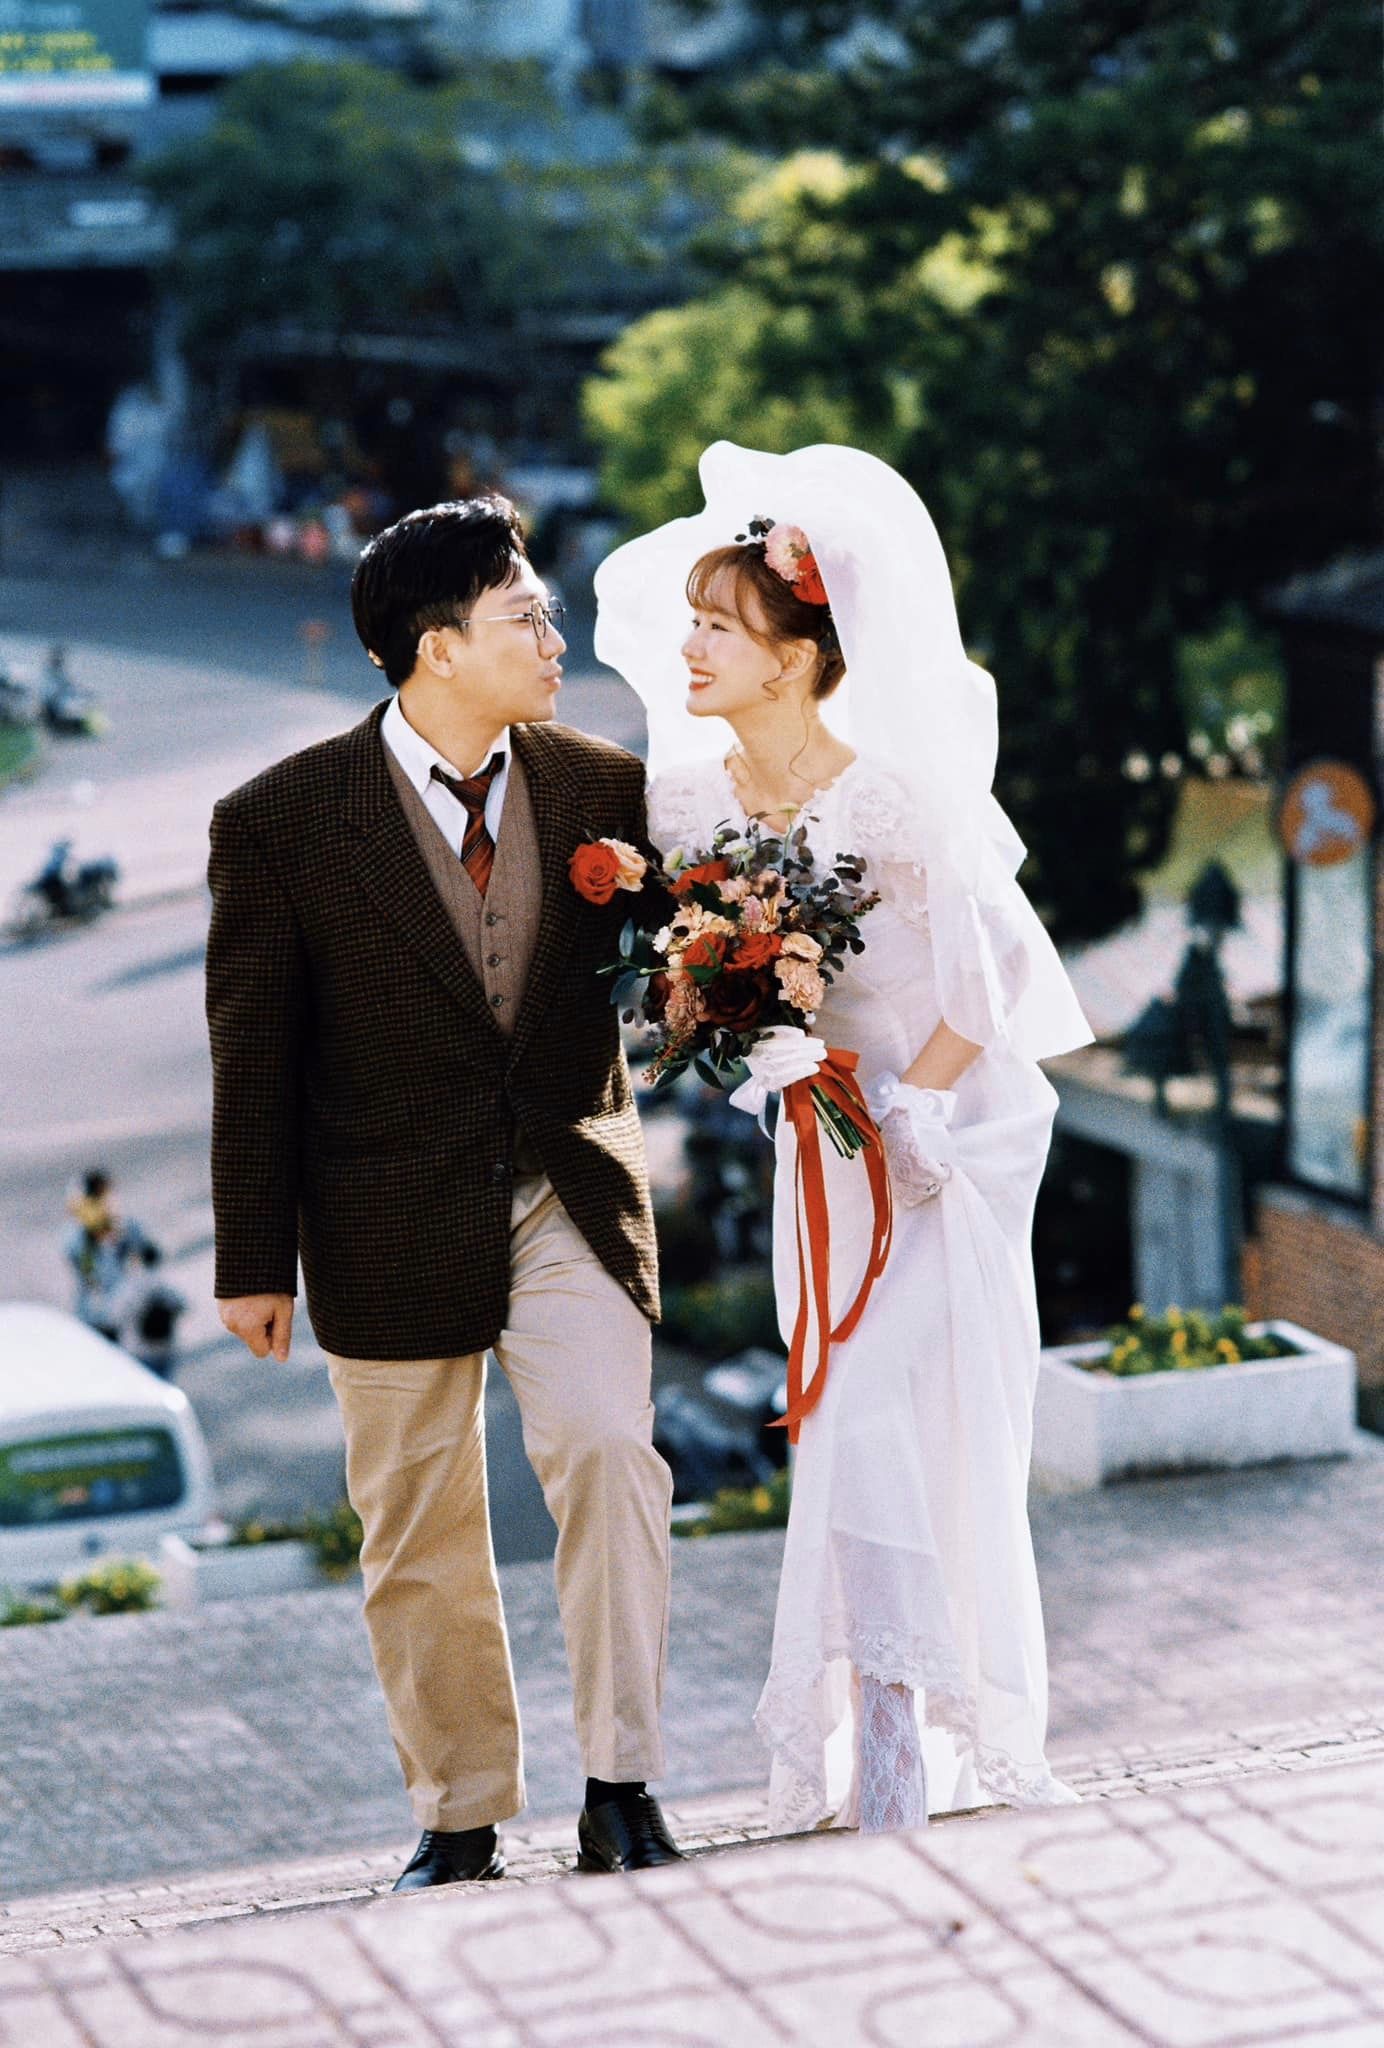 Vợ chồng Trấn Thành - Hari Won tung bộ ảnh cưới thập niên 90 nhân dịp kỷ niệm 7 năm "về chung 1 nhà"- Ảnh 3.